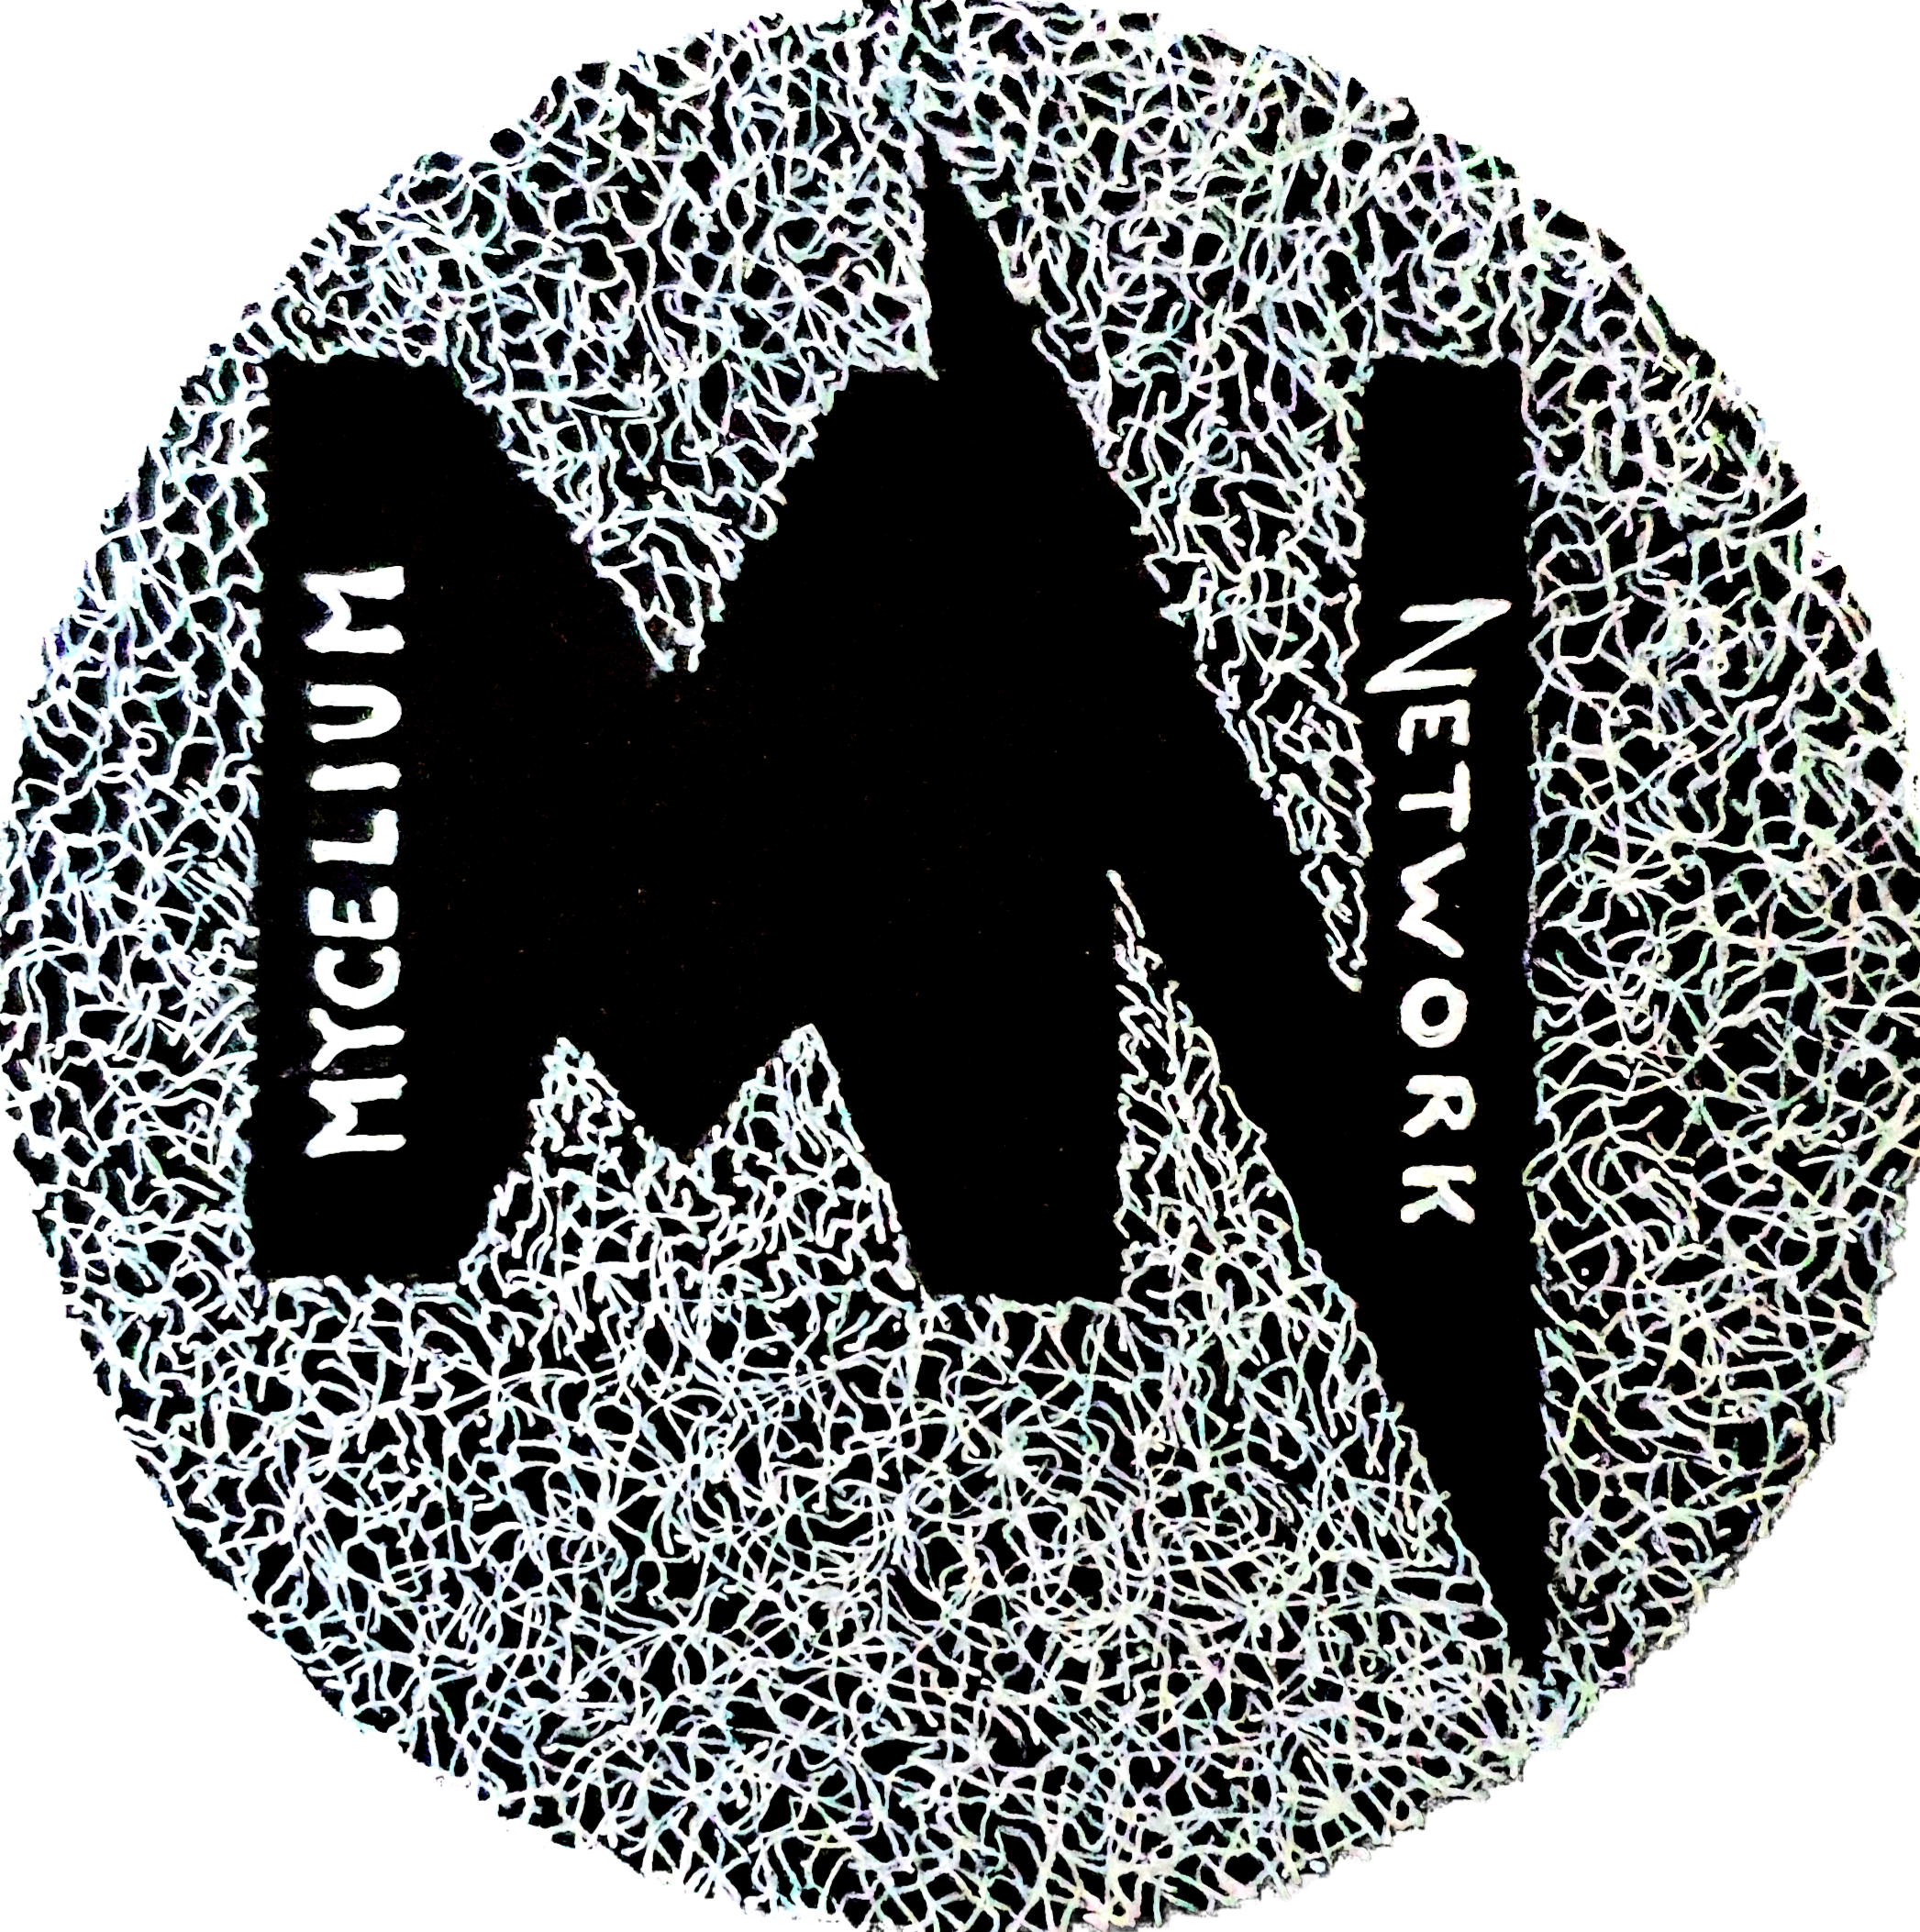 Mycelium Network